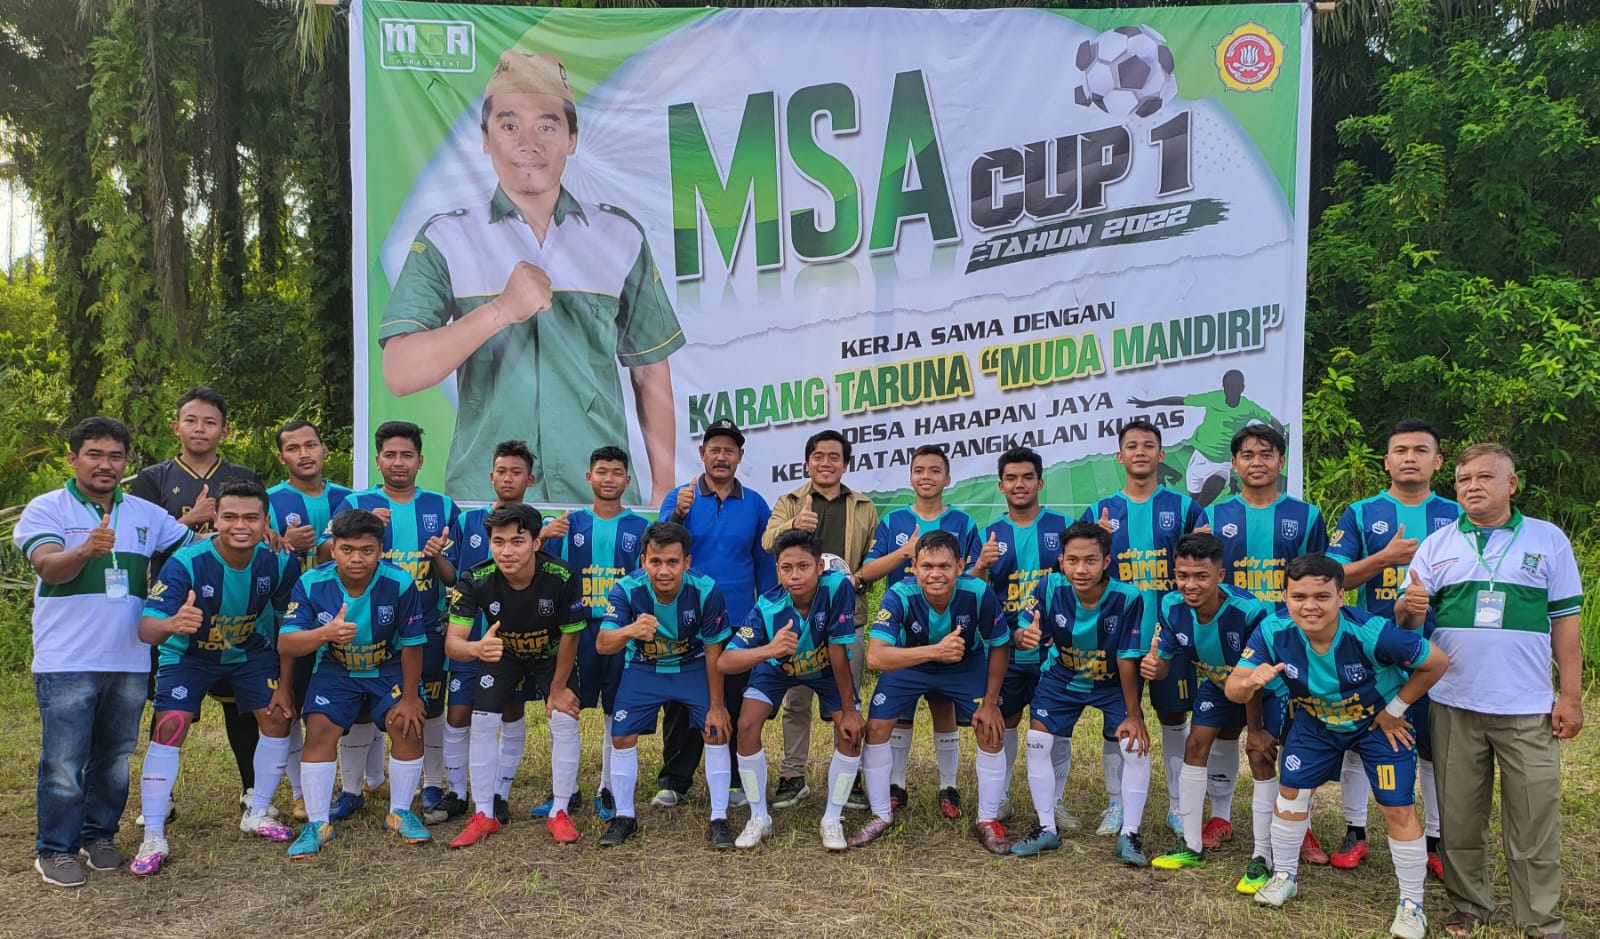 Shohib Sponsor Utama, MSA Management Gelar Turnamen Sepak Bola